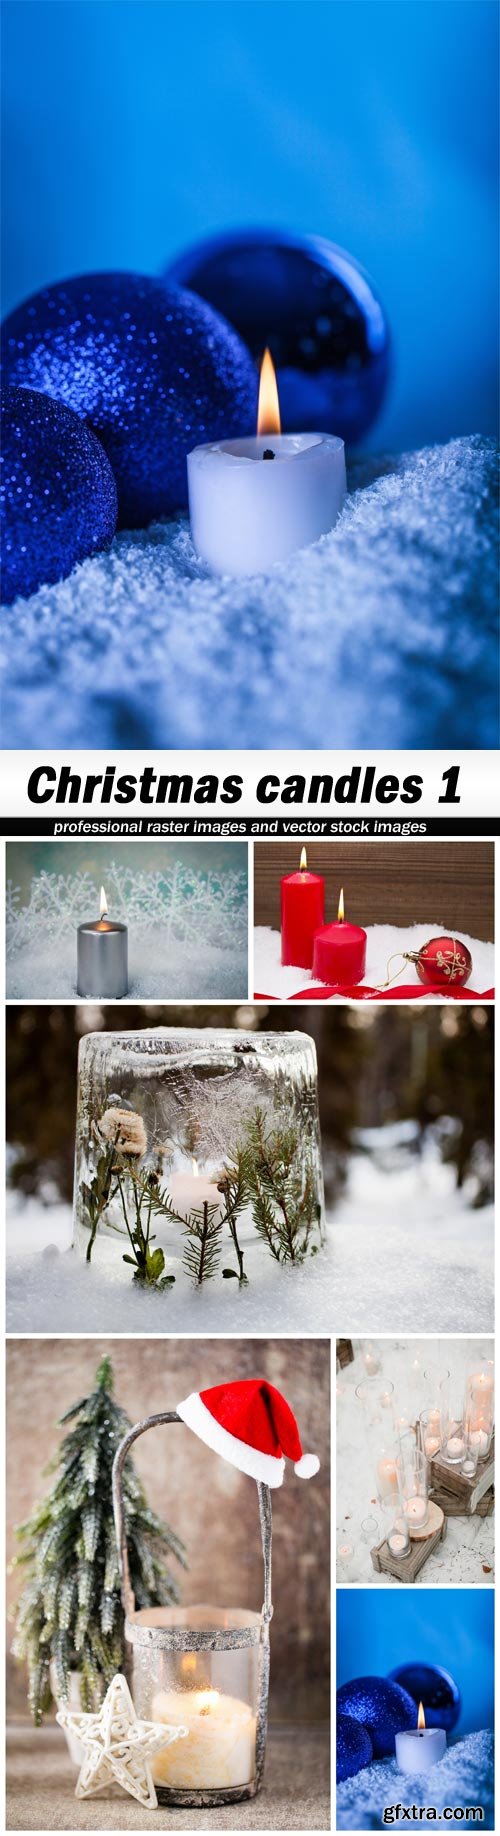 Christmas candles 1 - 6 UHQ JPEG